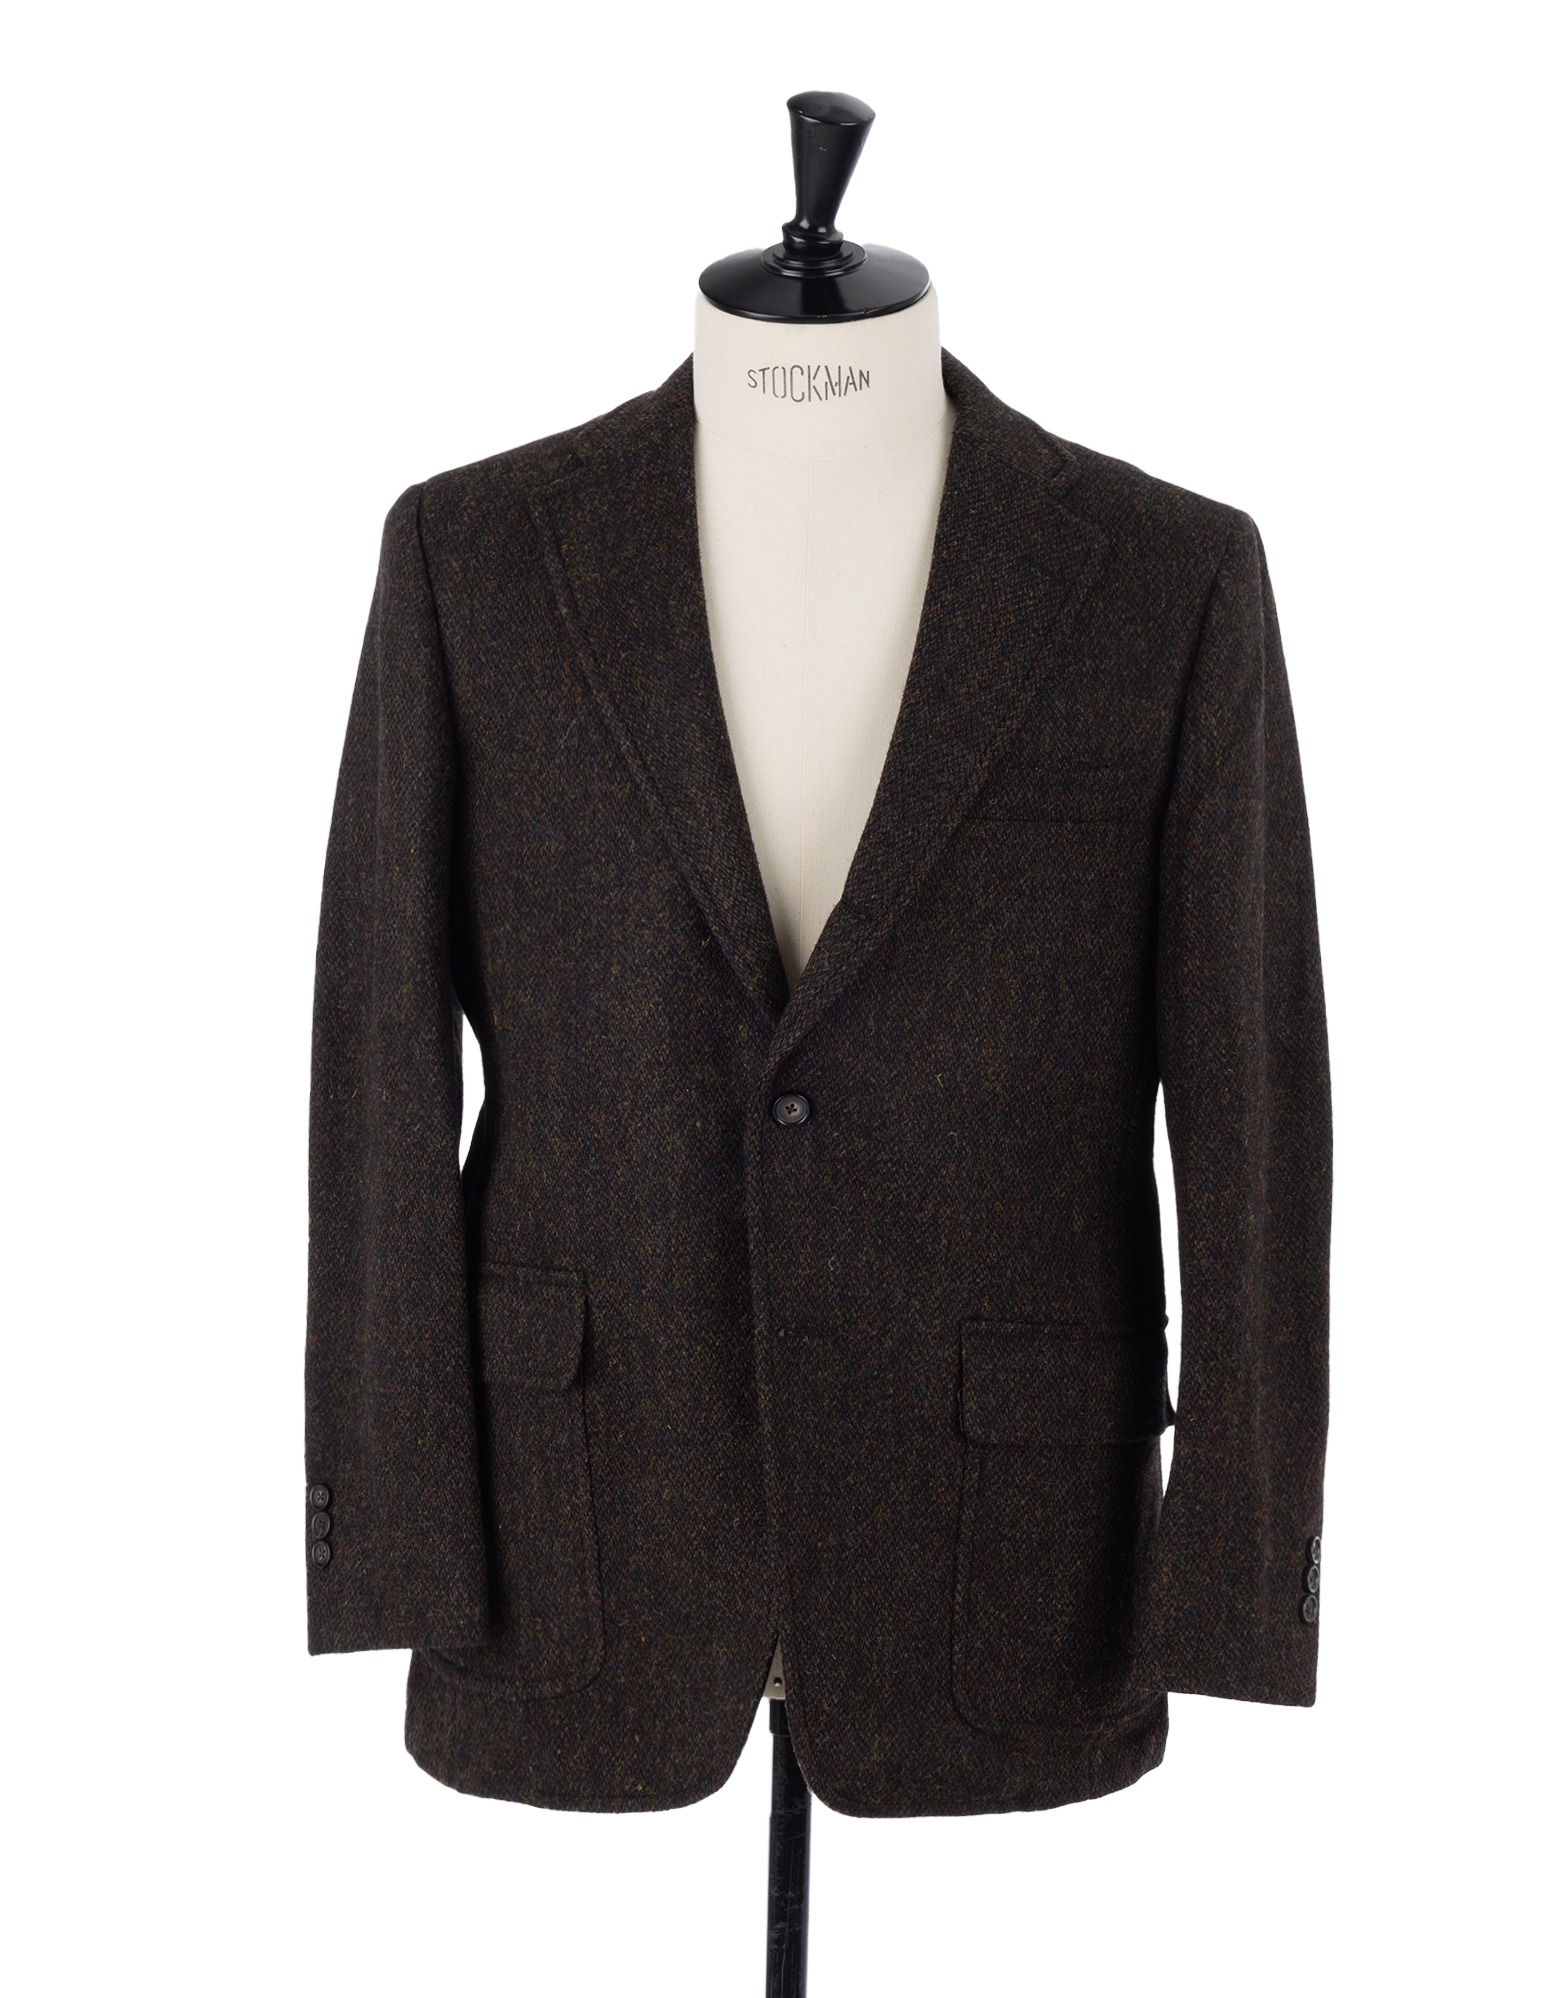 Harris Tweed Sport Coat (Brown)